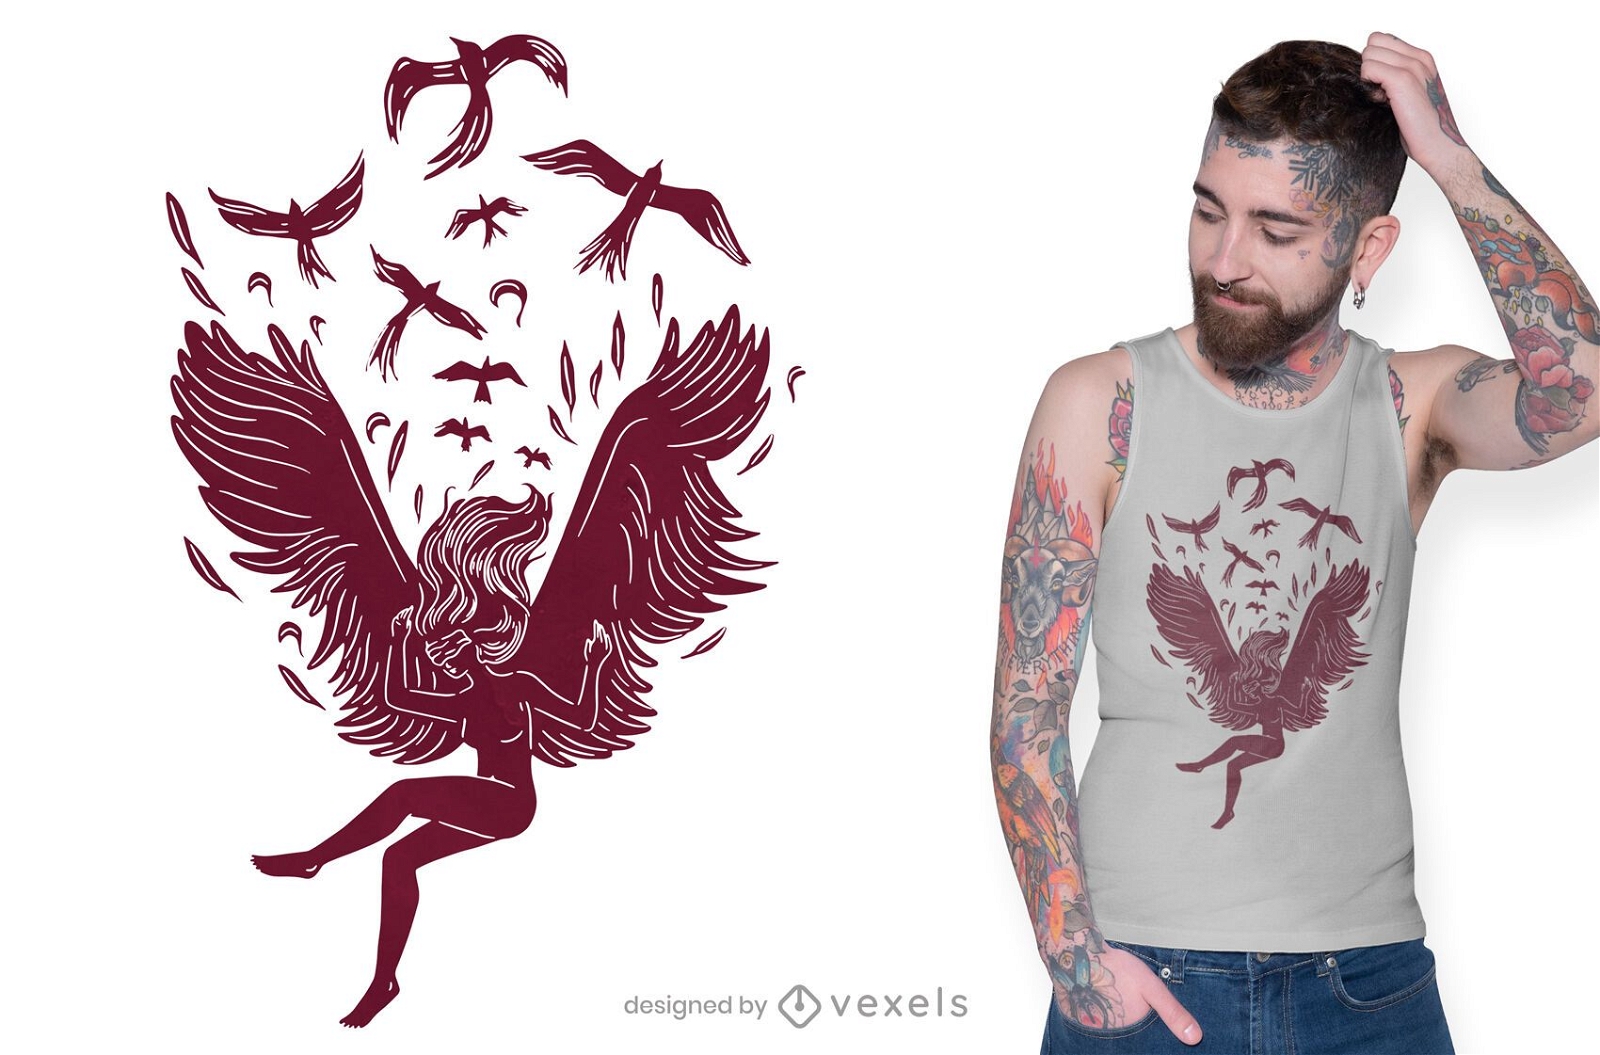 Falling angel t-shirt design